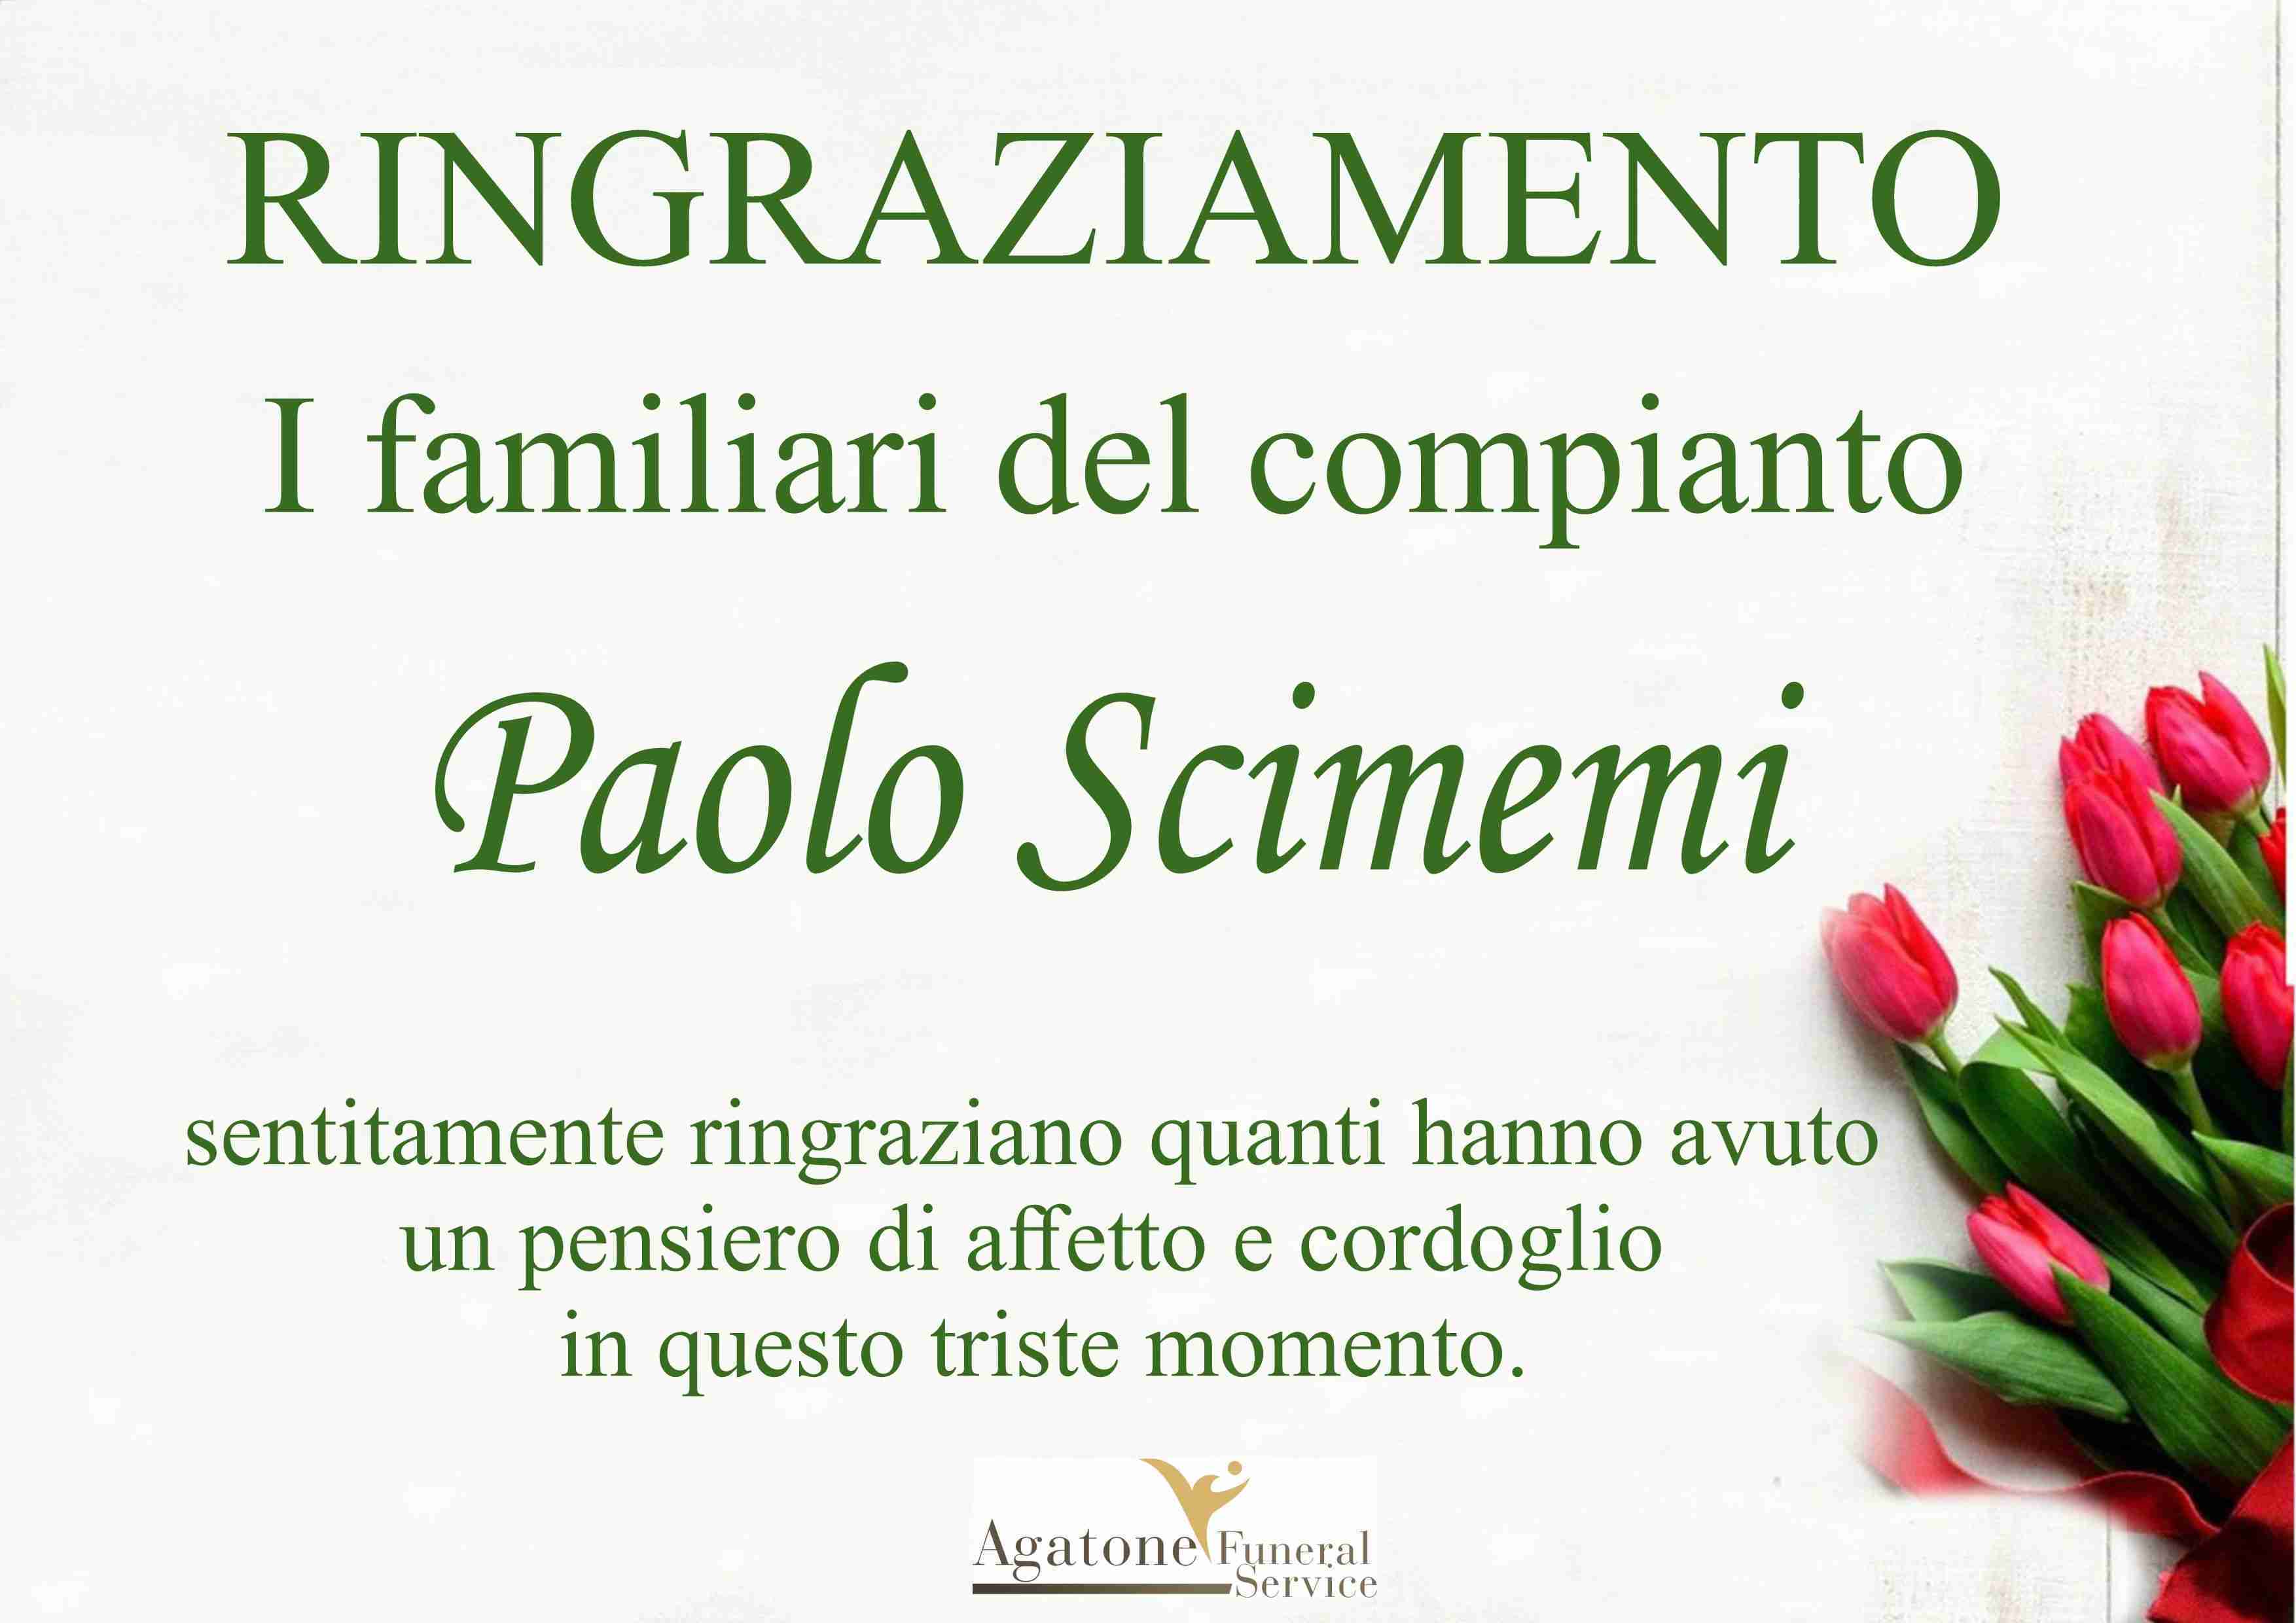 Paolo Scimemi